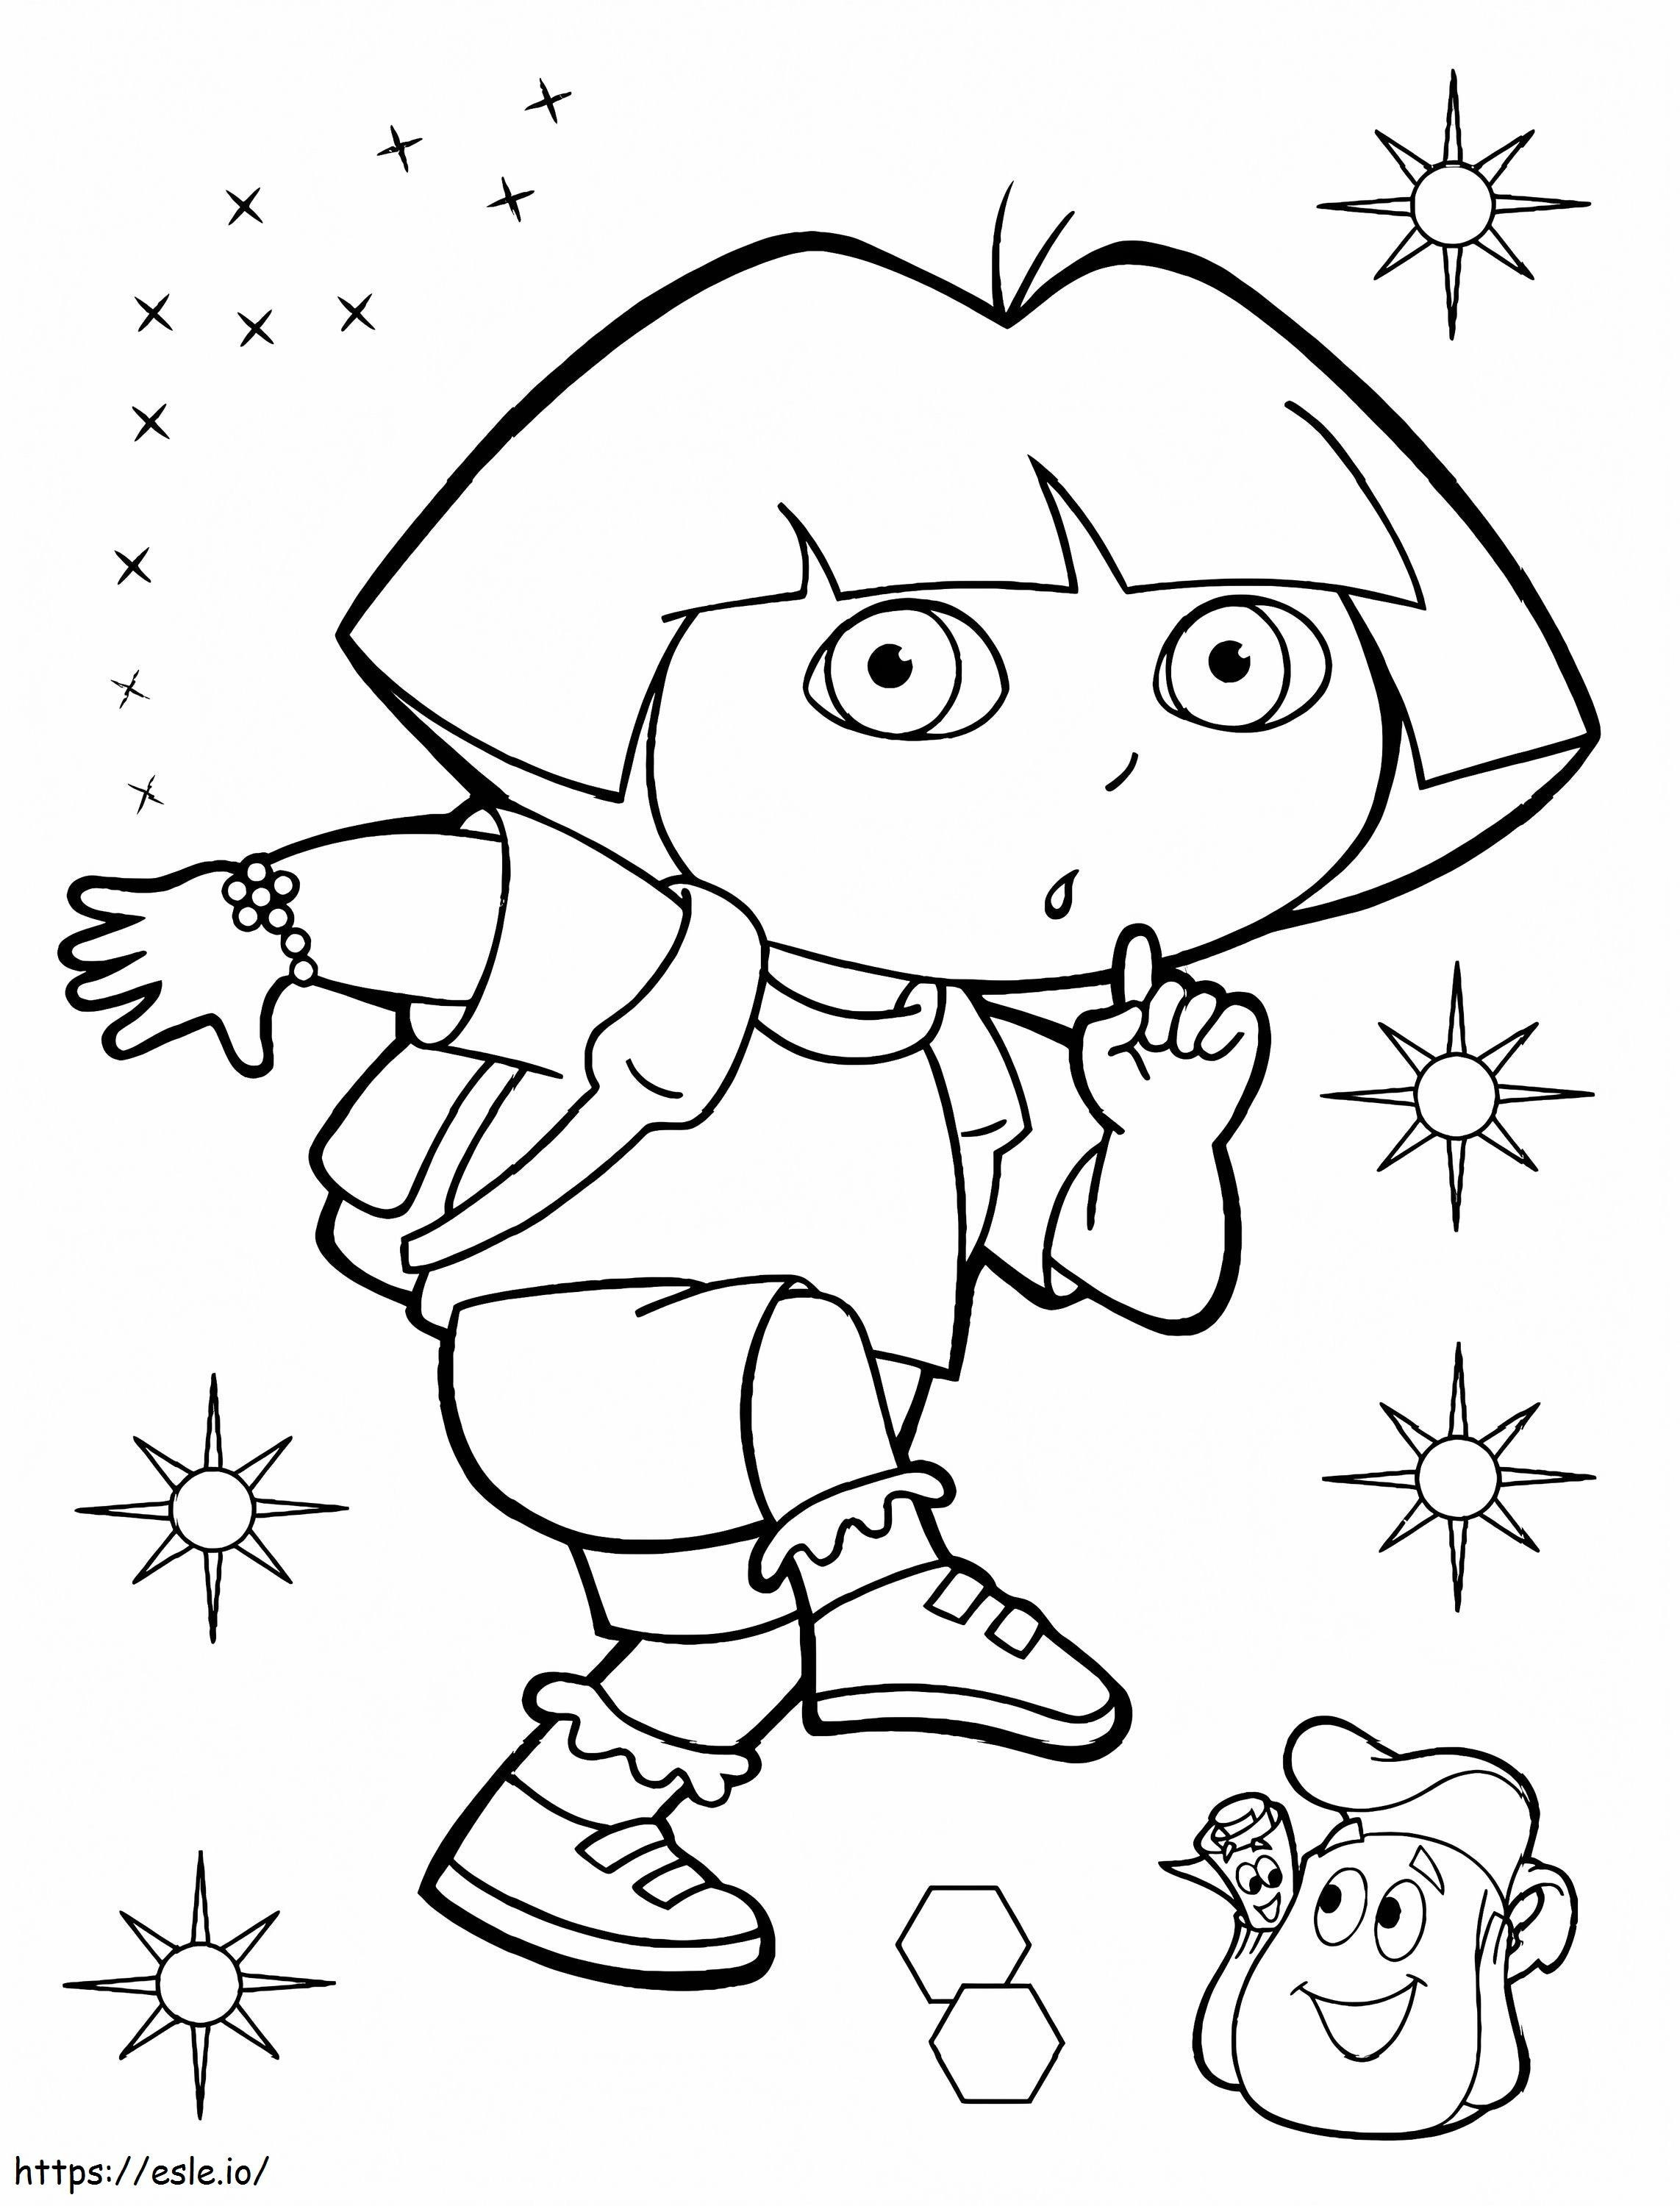 Coloriage 1580872964 Coloriage pour enfants Dora l'exploratrice 25130 à imprimer dessin